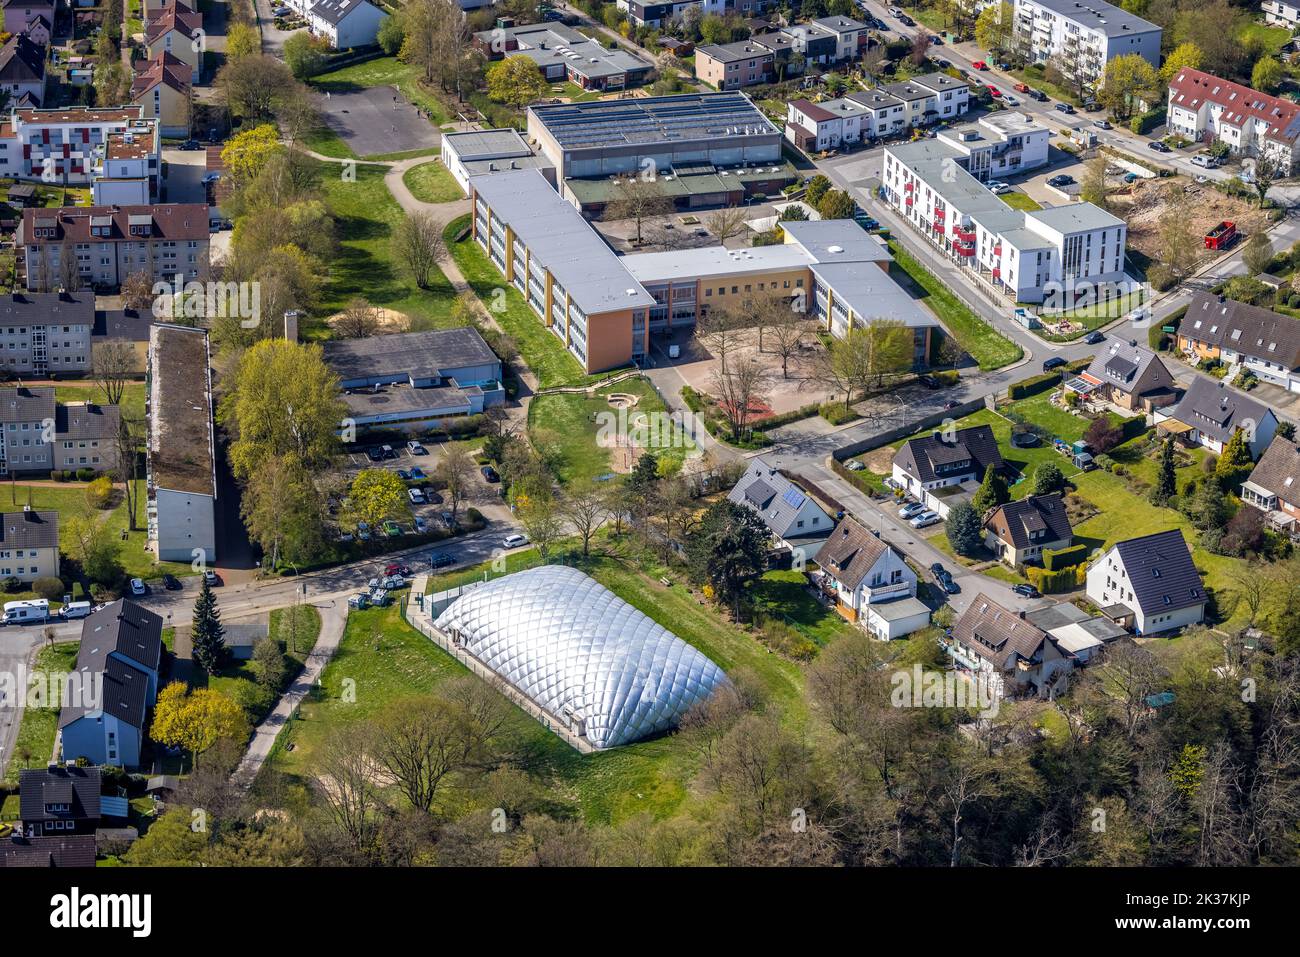 Vista aérea, escuela primaria Vormholz y airdome para uso como sala de deportes, Vormholz, Witten, área de Ruhr, Renania del Norte-Westfalia, Alemania, Educación, E Foto de stock